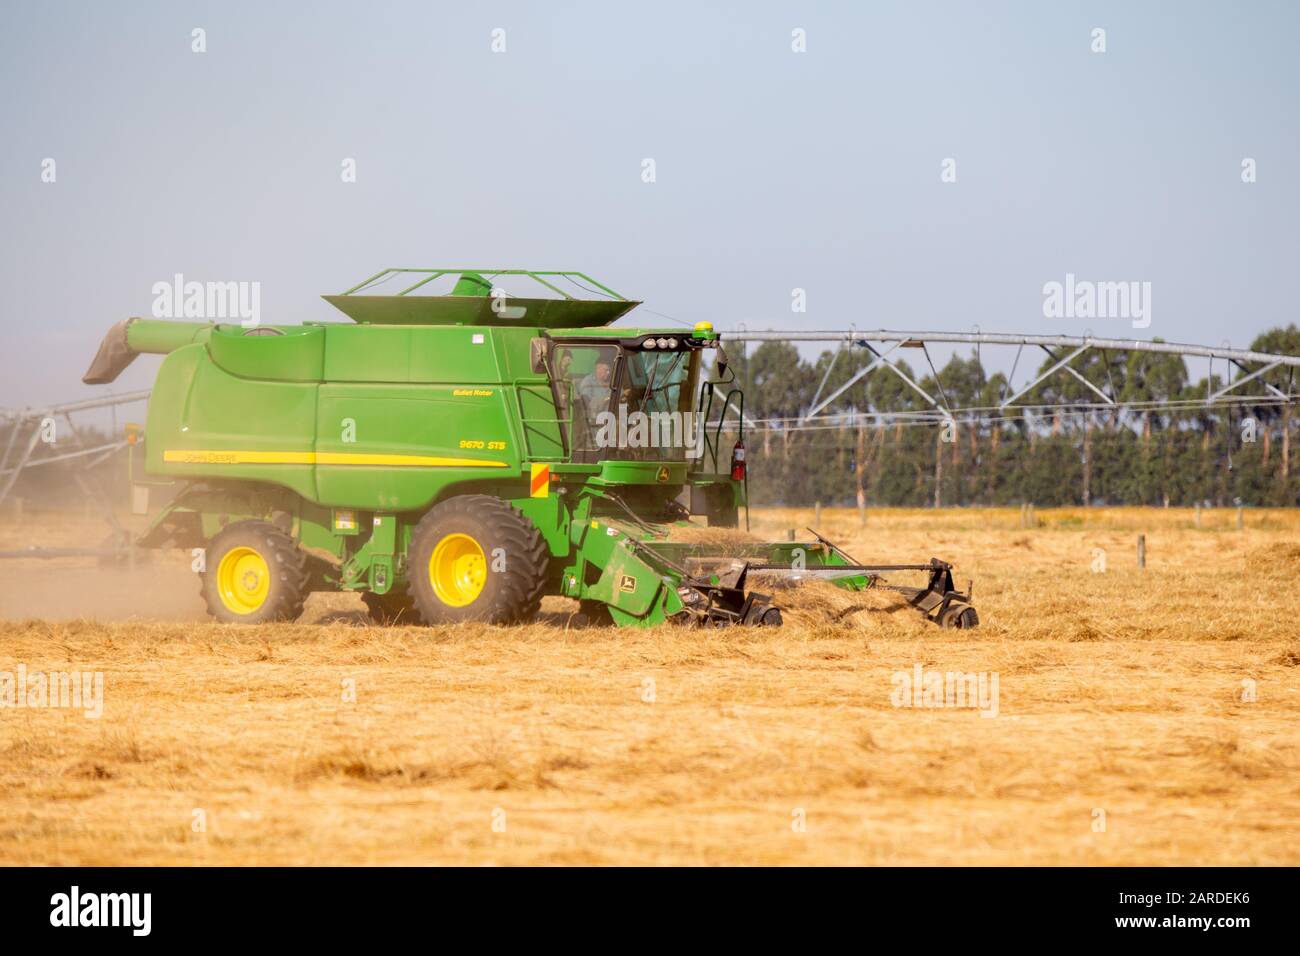 Canterbury, Nouvelle-Zélande, 26 janvier 2020: Une moissonneuse-batteuse John Deere sépare la semence du raygrass coupé dans un champ agricole Banque D'Images